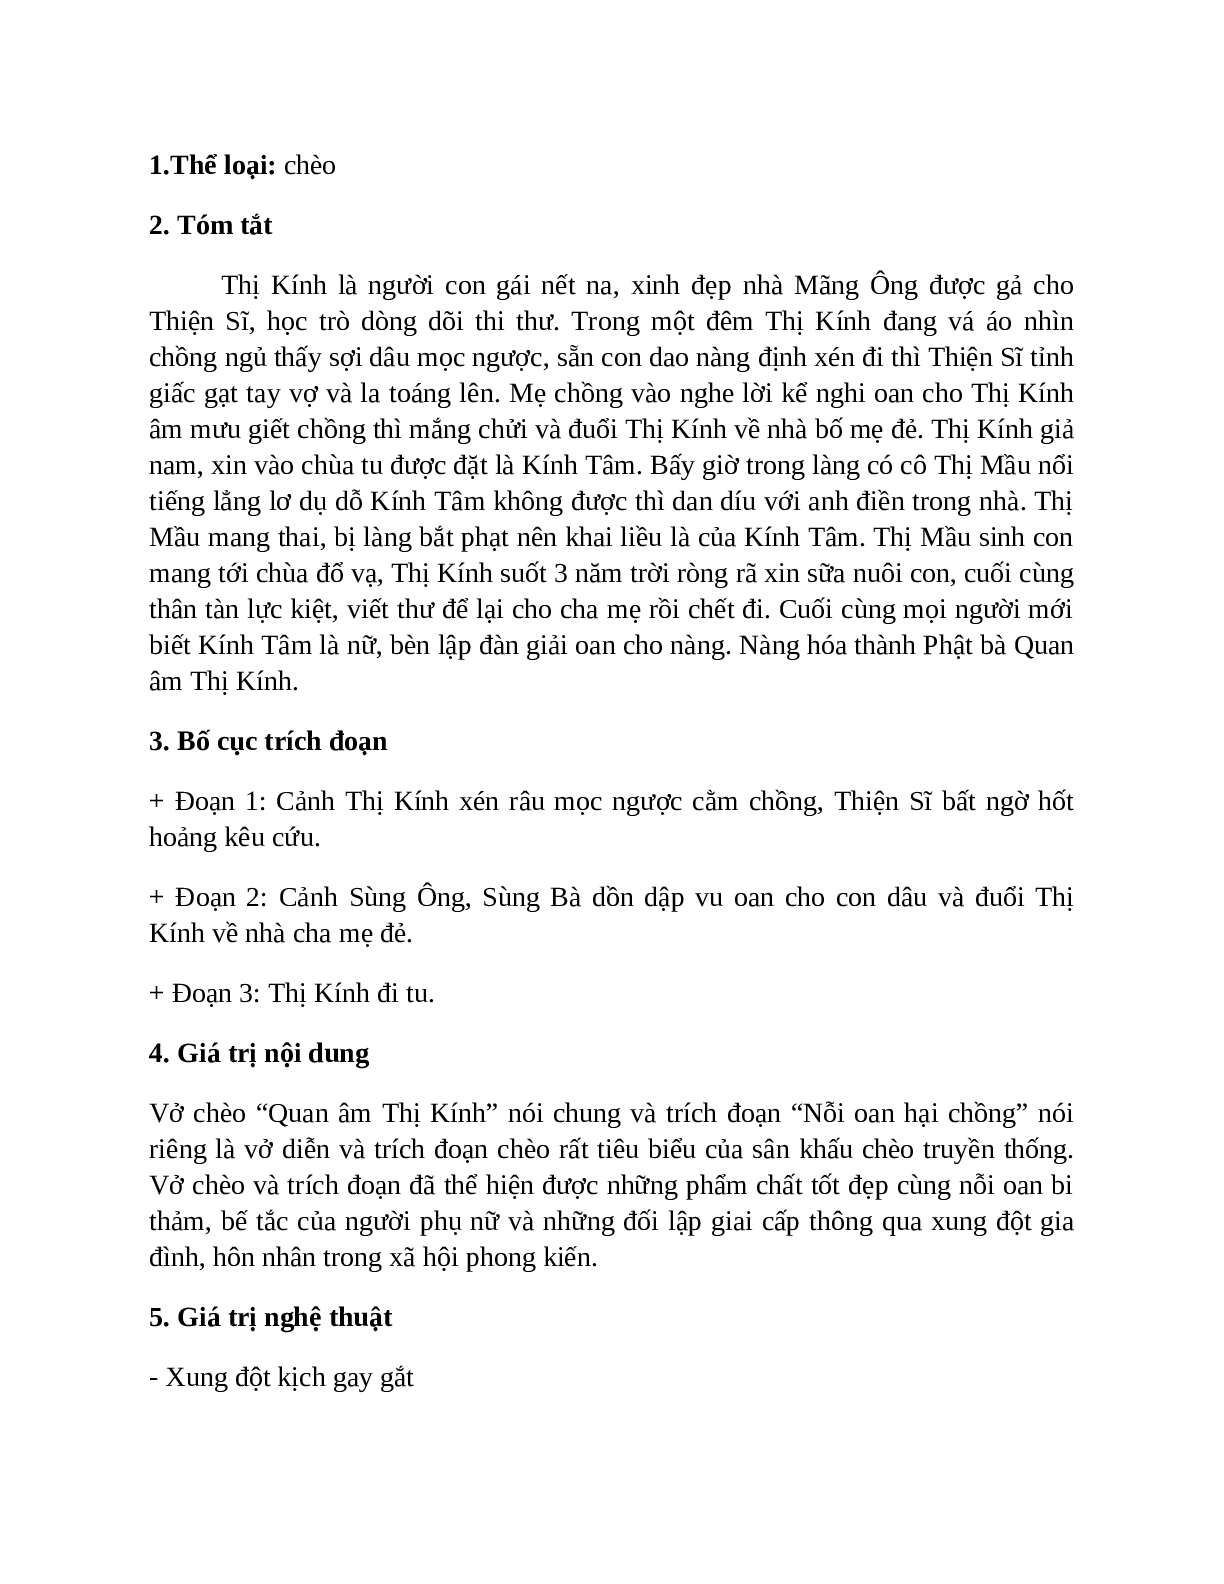 Sơ đồ tư duy bài Quan Âm Thị Kính dễ nhớ, ngắn nhất - Ngữ văn lớp 7 (trang 2)